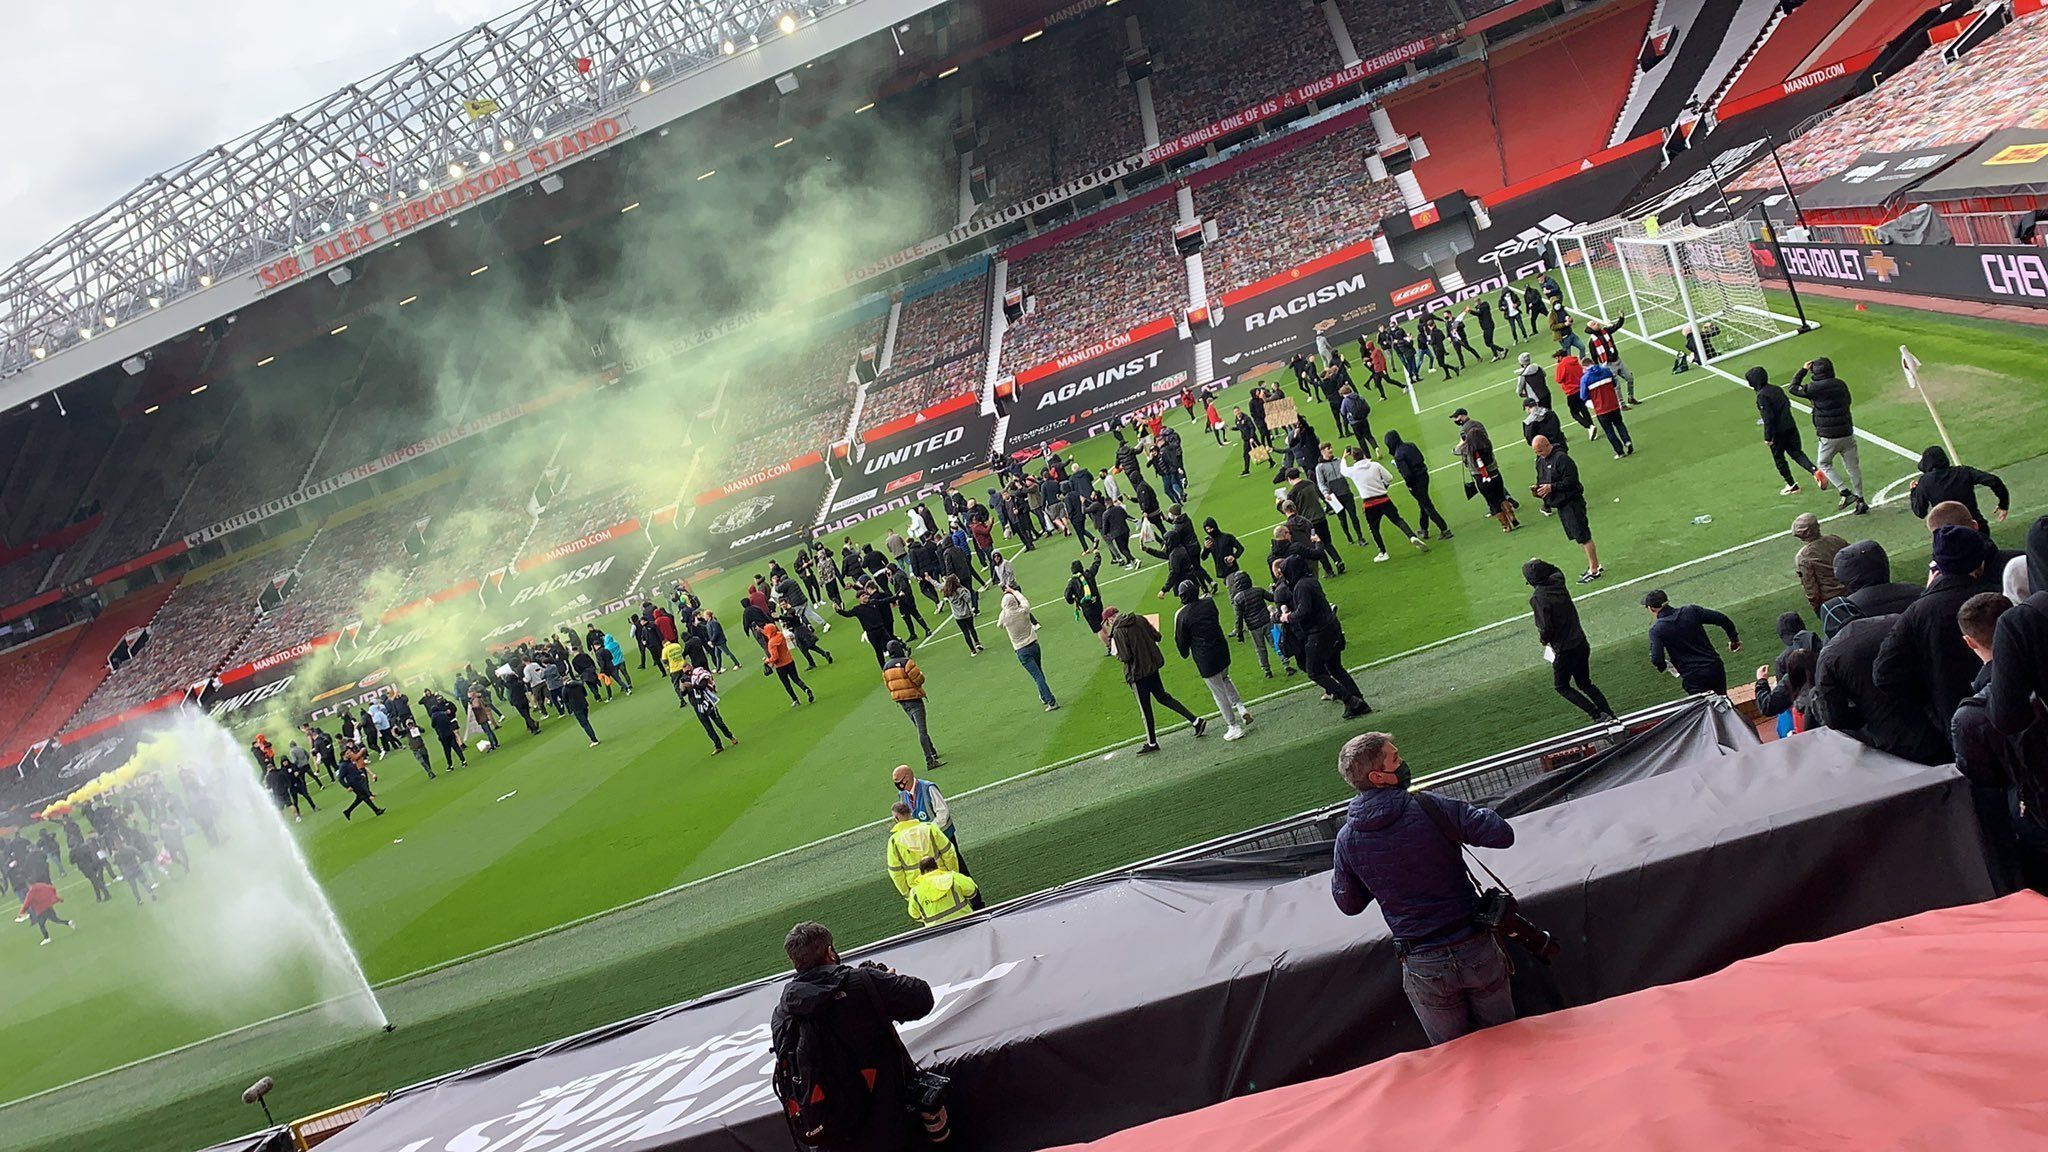 Фанаты Манчестер Юнайтед прорвались на стадион перед матчем с Ливерпулем: фото и видео - новости футбола - Новости спорта